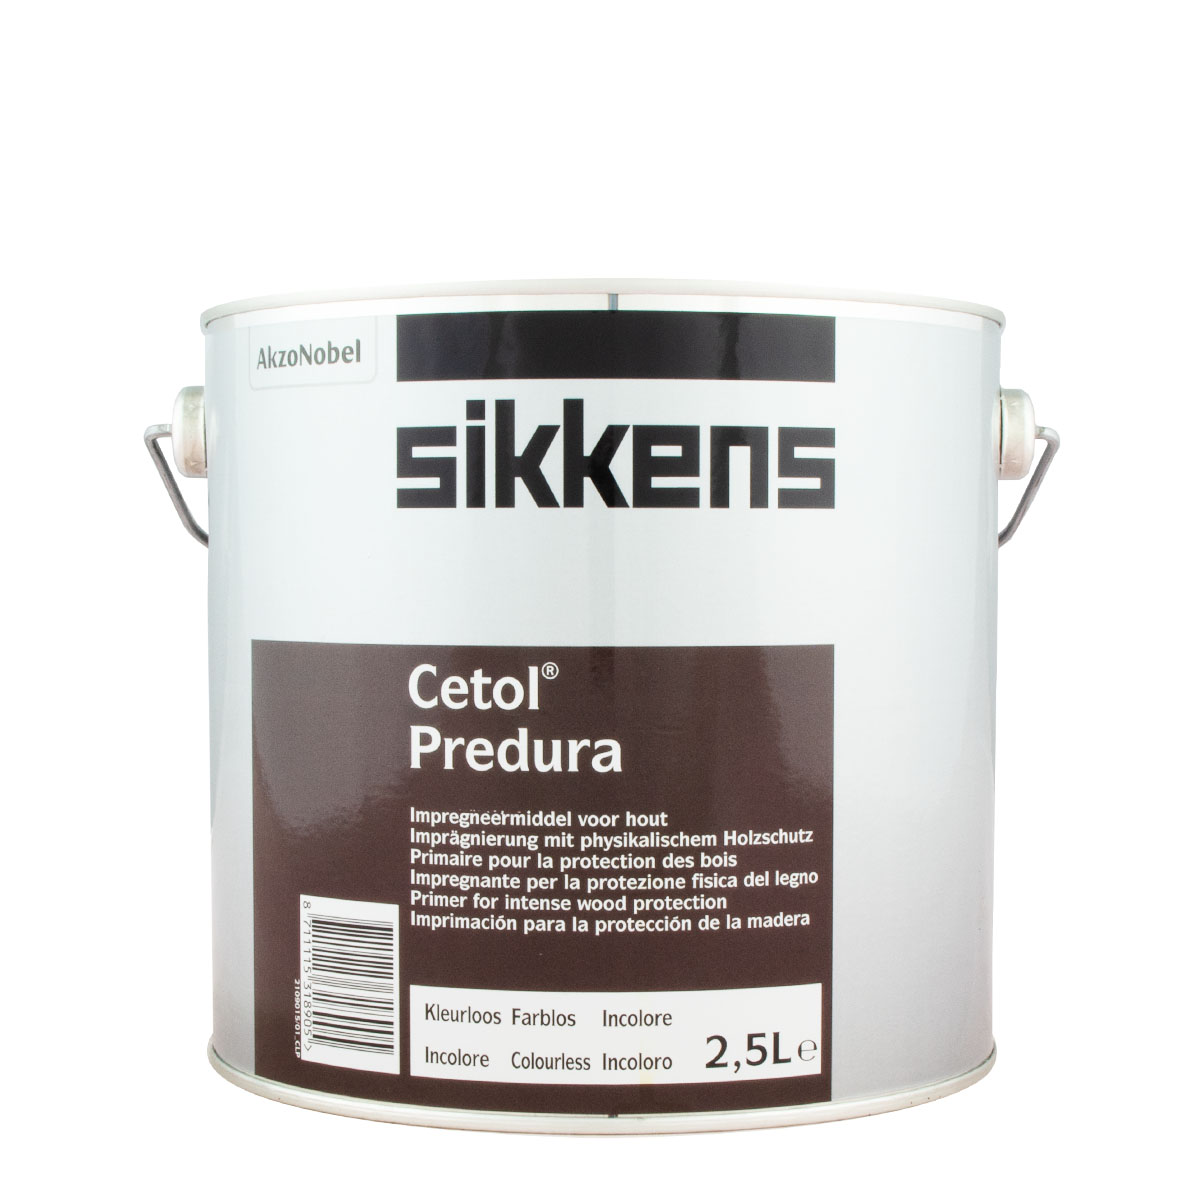 Sikkens Cetol Predura 2,5L farblos, Imprägnierung, Holzschutz